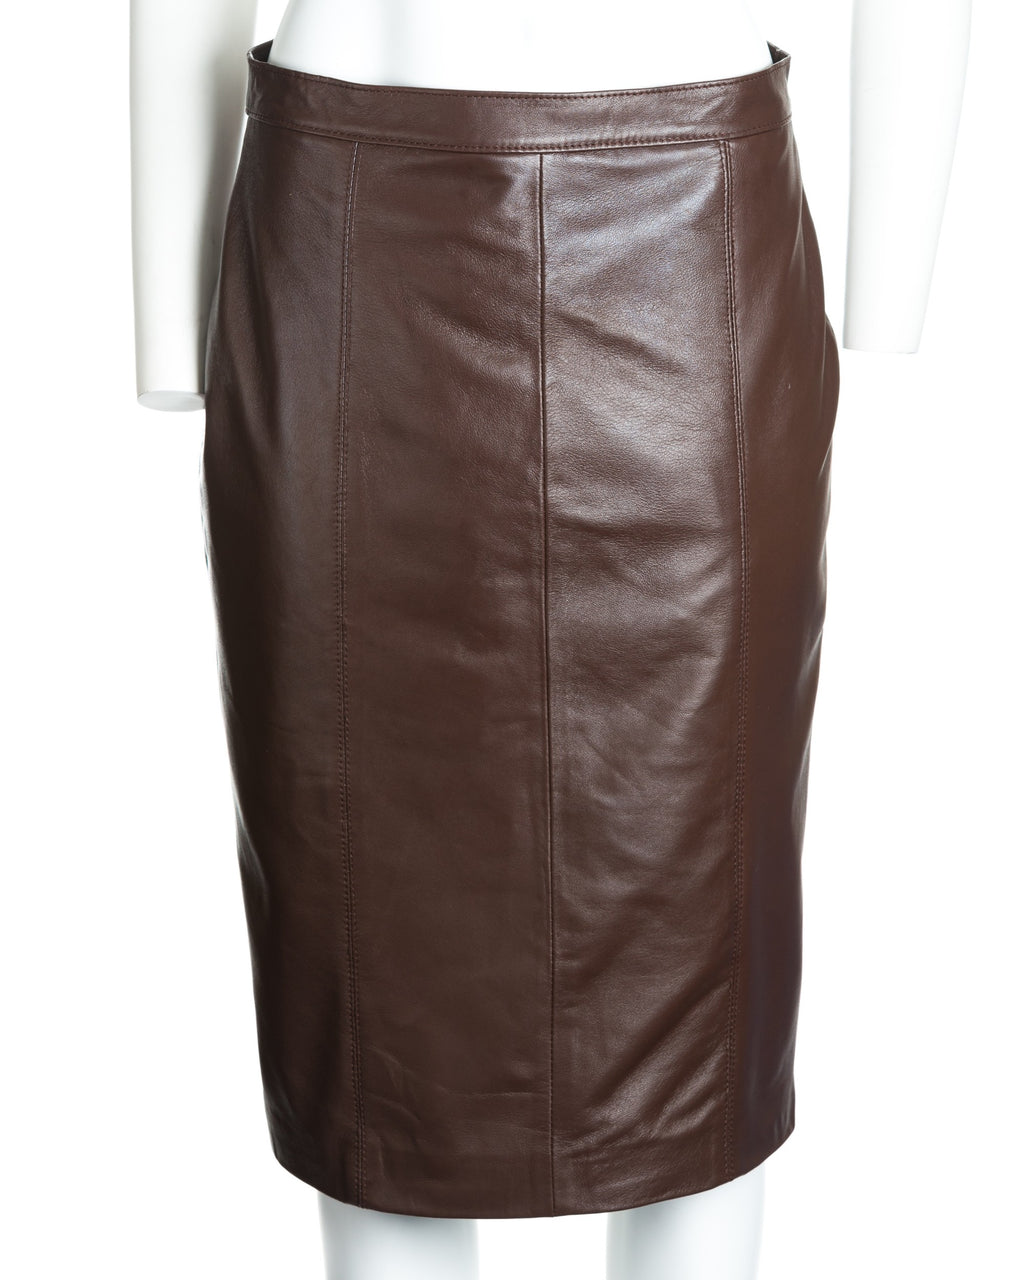 Ladies 17" Leather Skirt